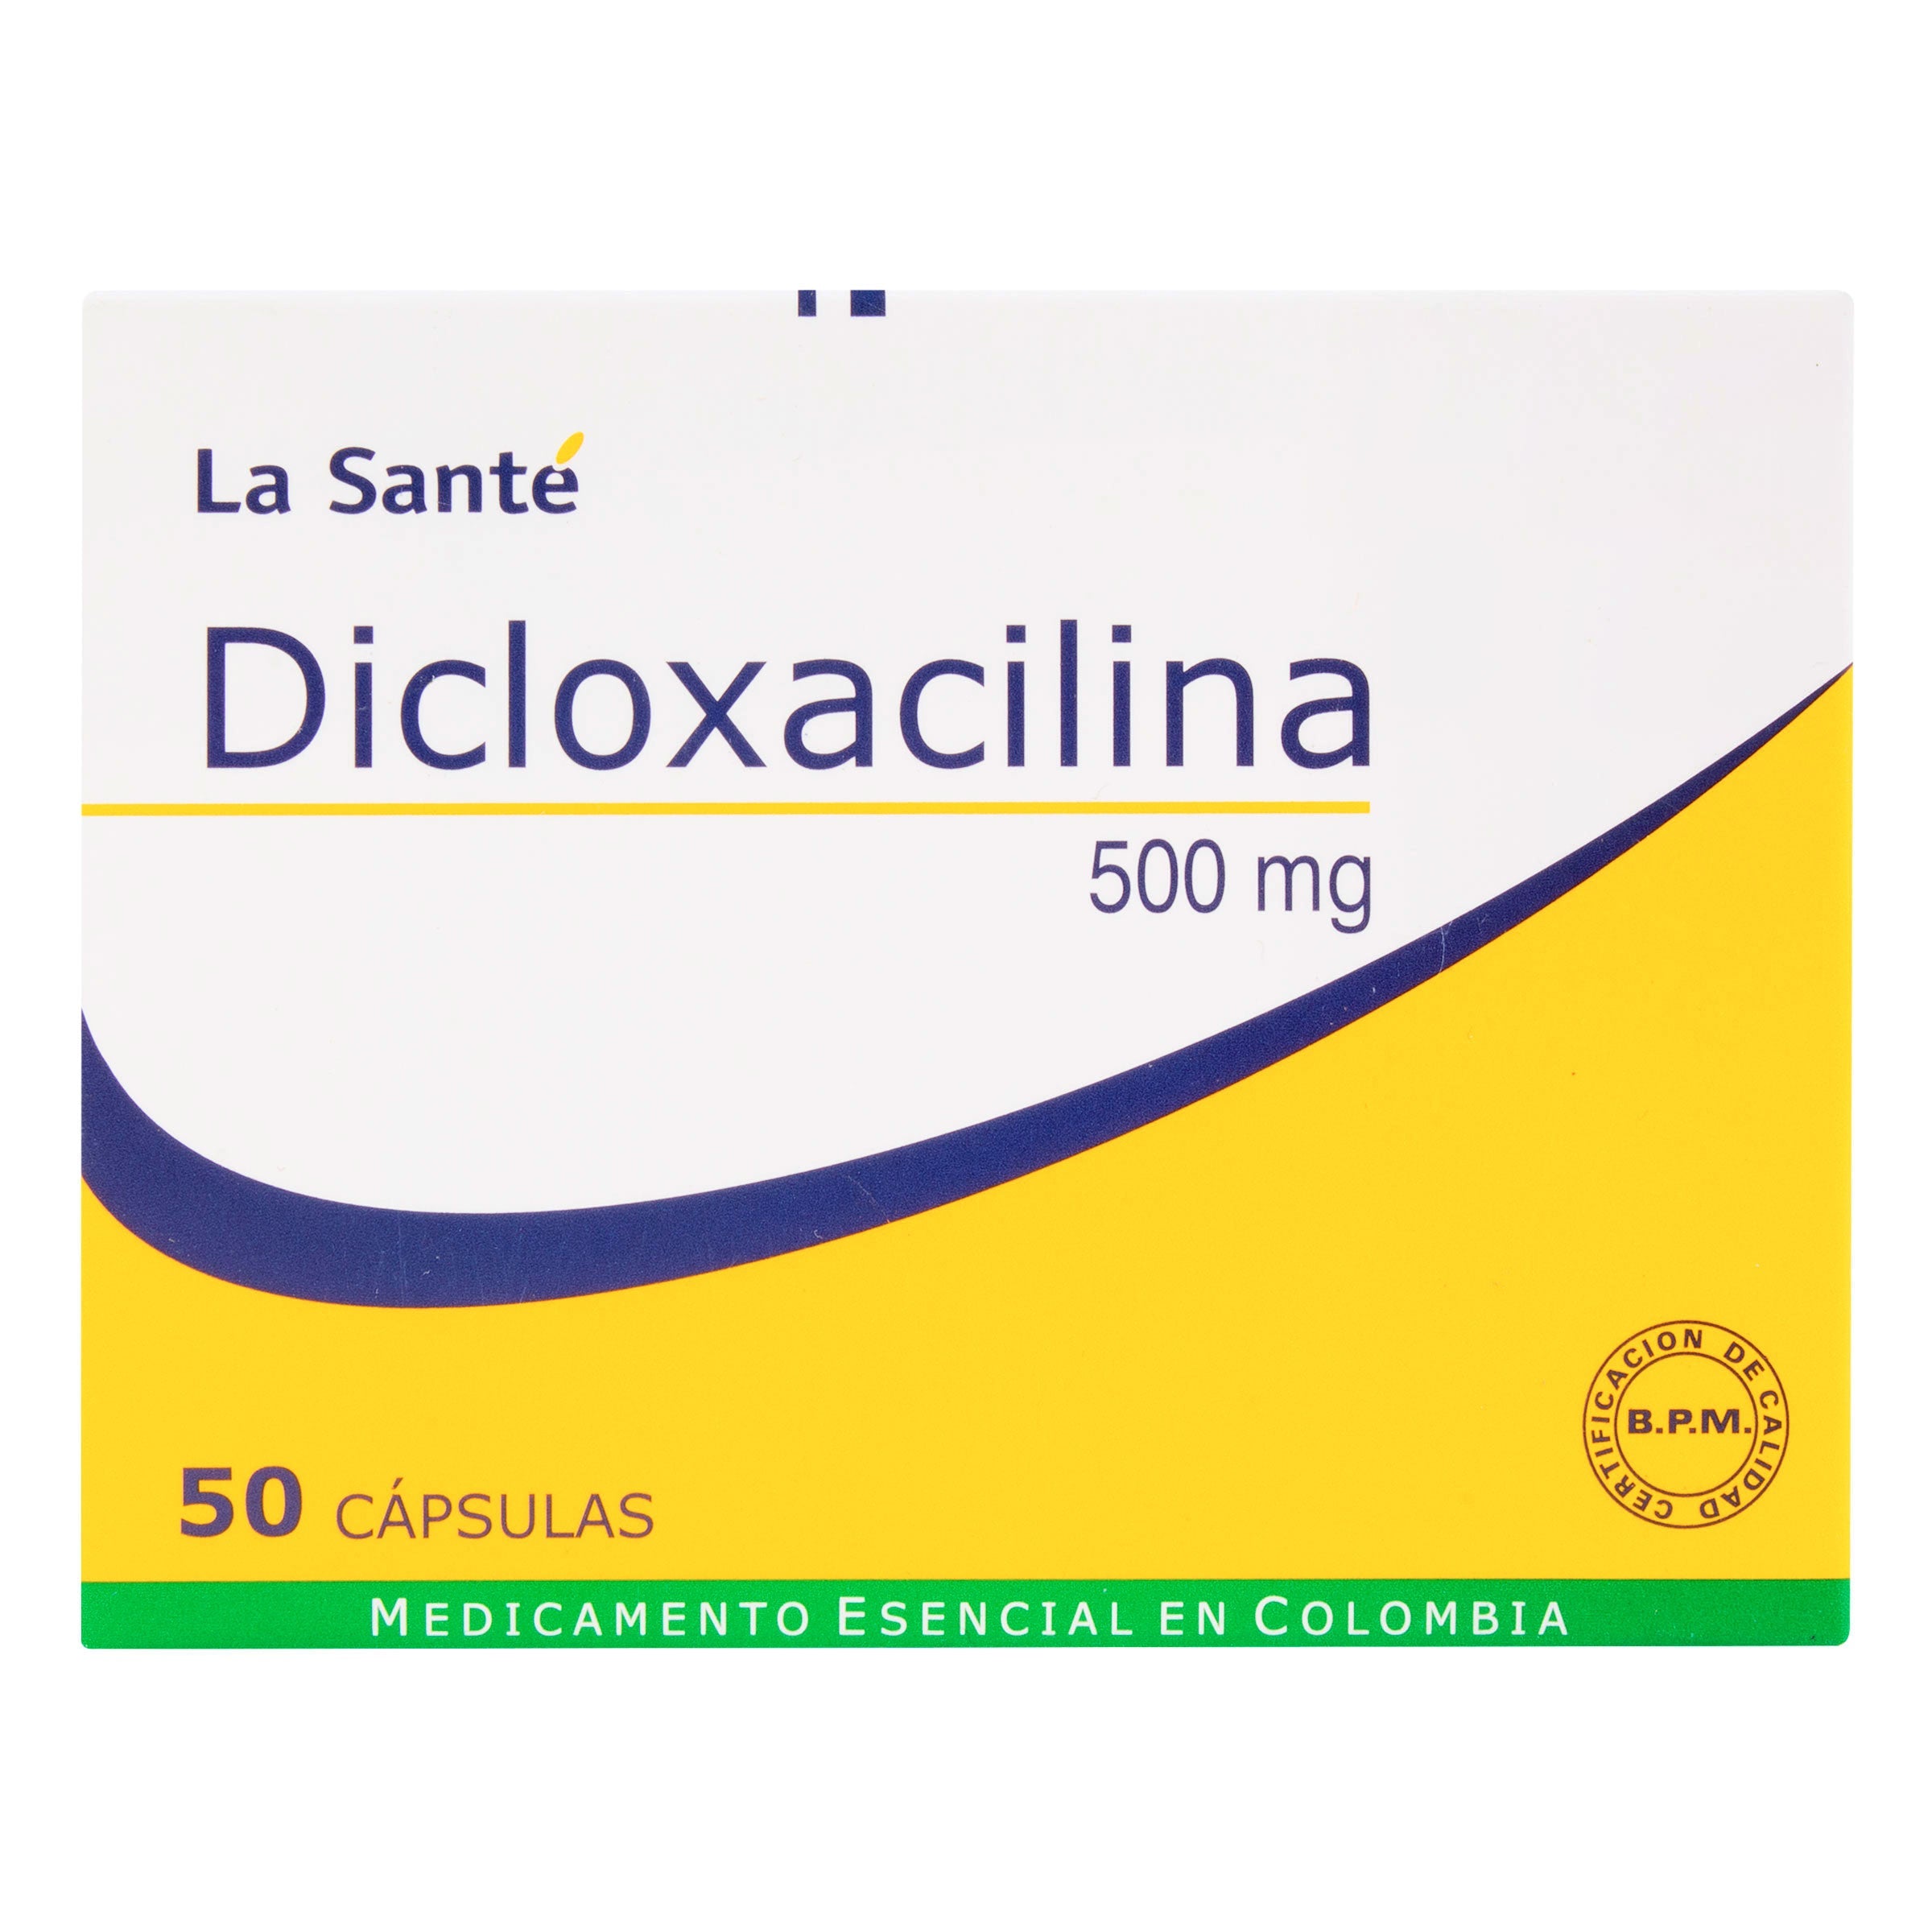 DICLOXACILINA 500 MG 50 CAPSULAS LS